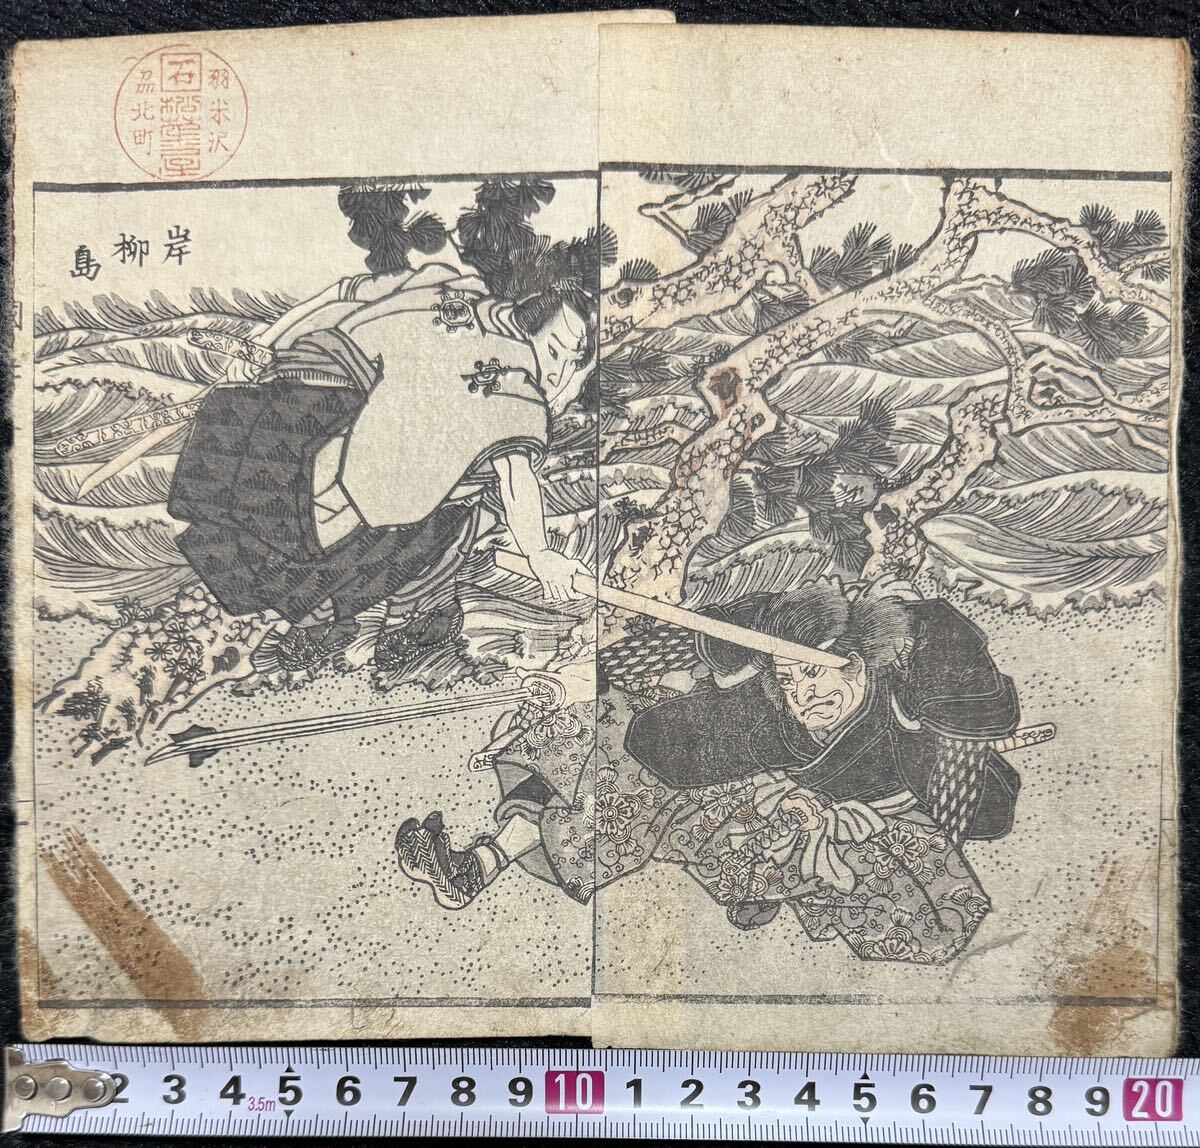  Edo период / подлинный произведение . река страна .[ страна .. сборник репродукций .. остров ] подлинный товар картина в жанре укиё гравюра на дереве картина с изображением батальных сцен .. размер примерно 20.5x18cm